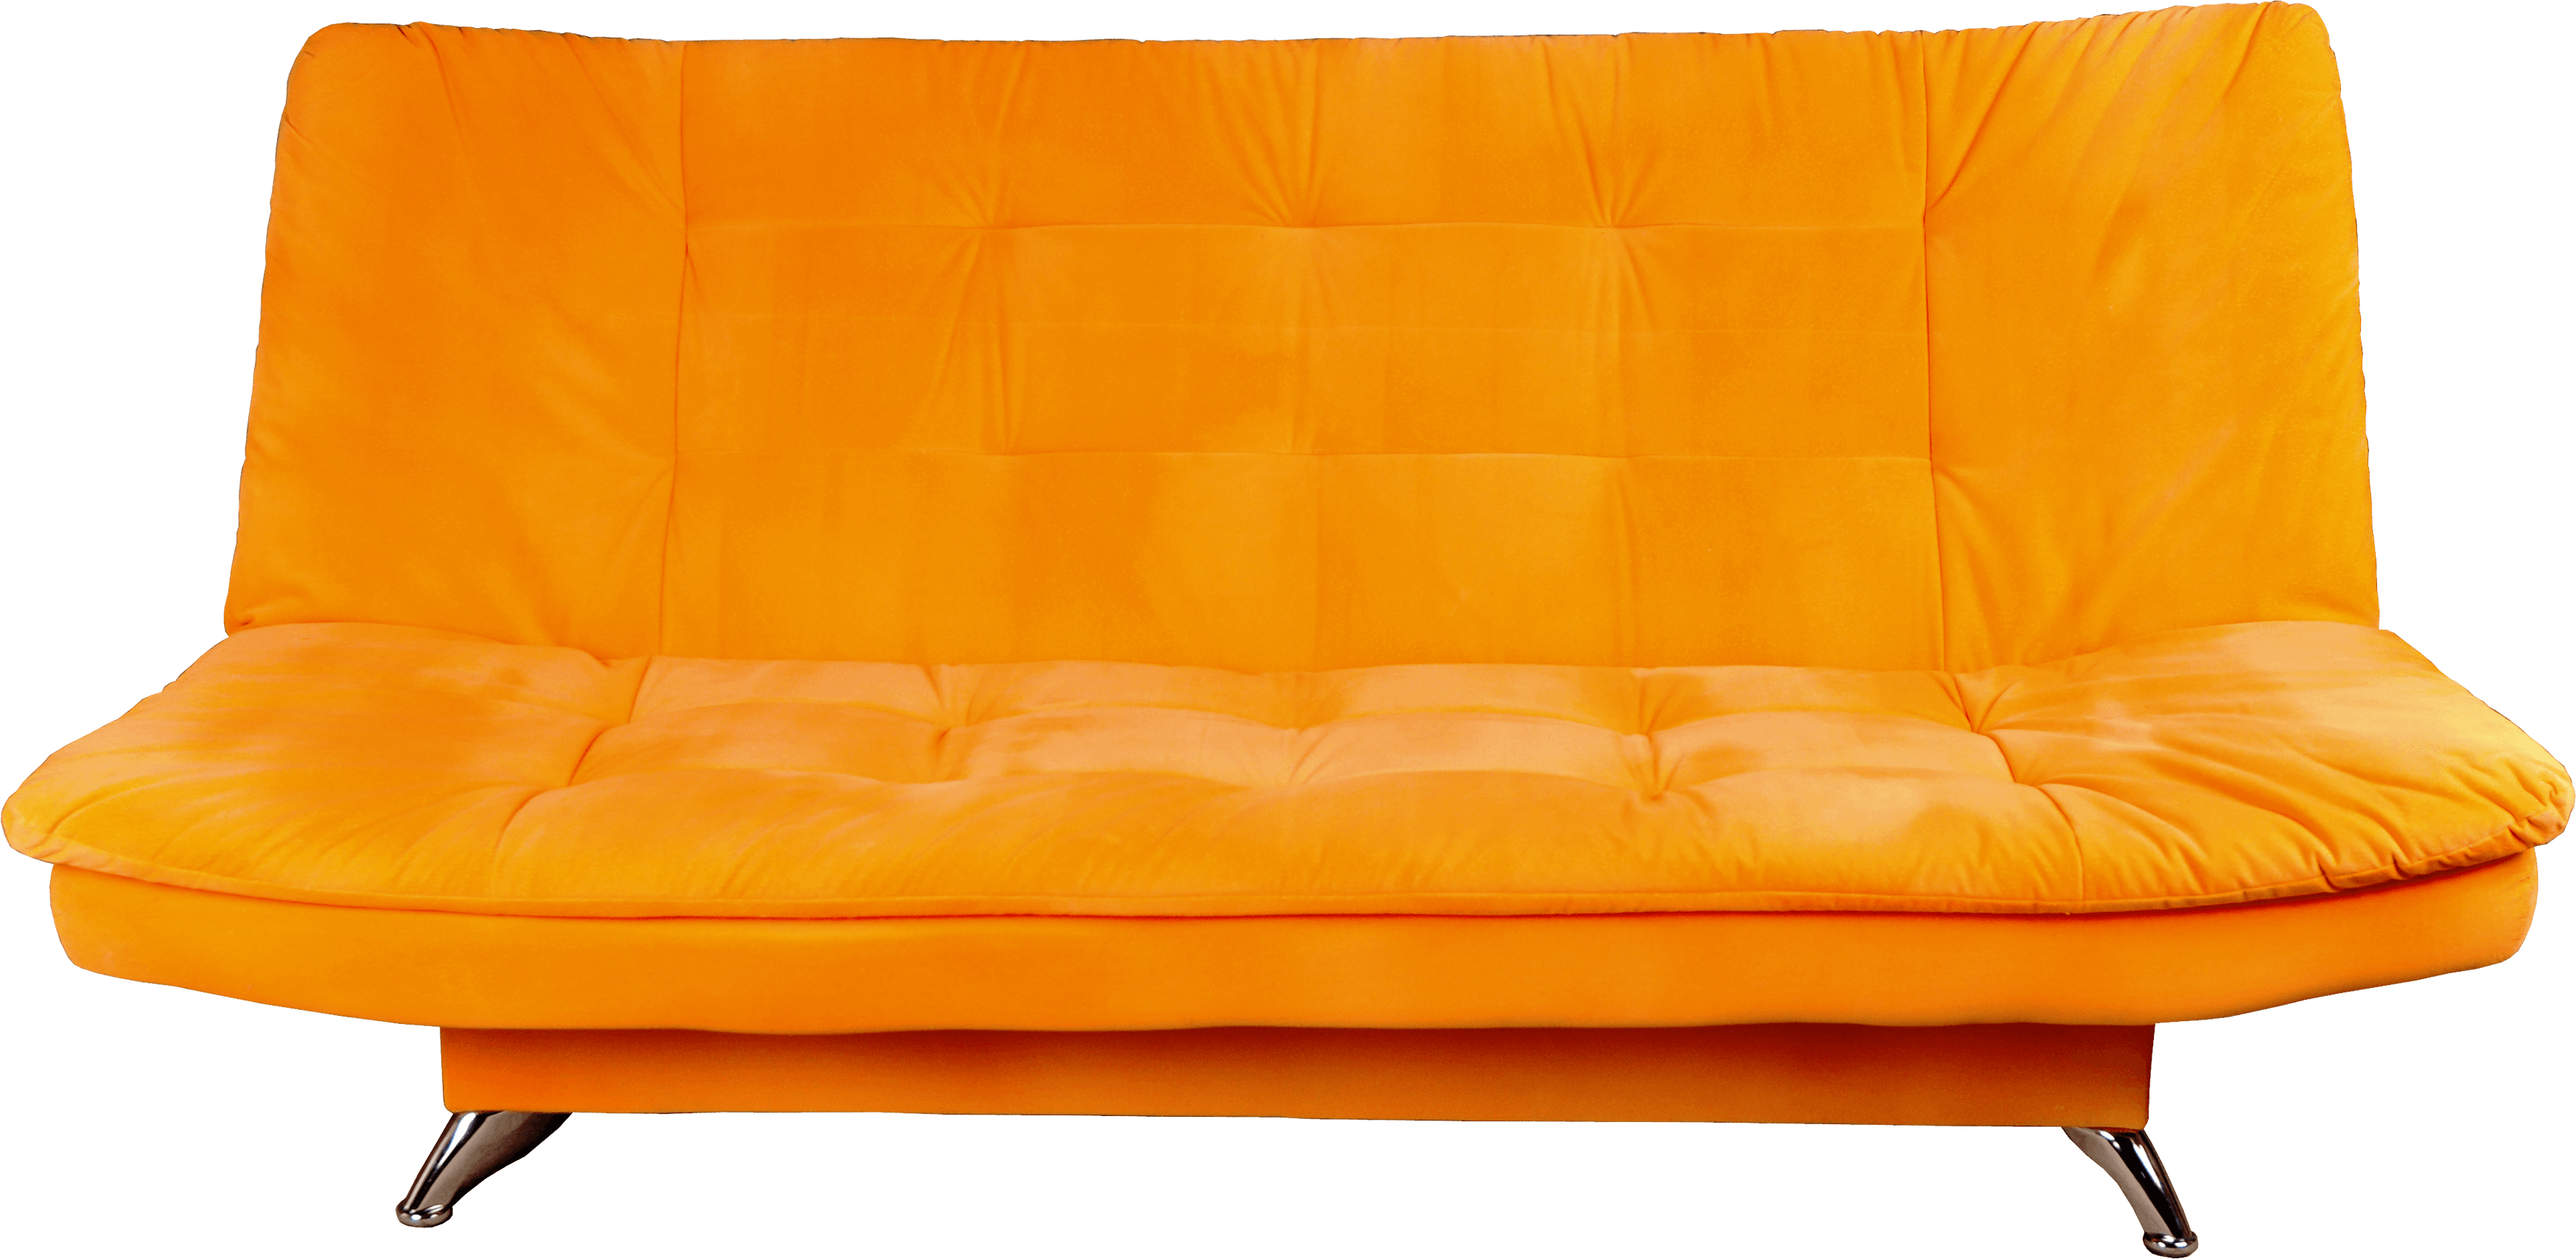 Orange Sofa Png Image PNG Image